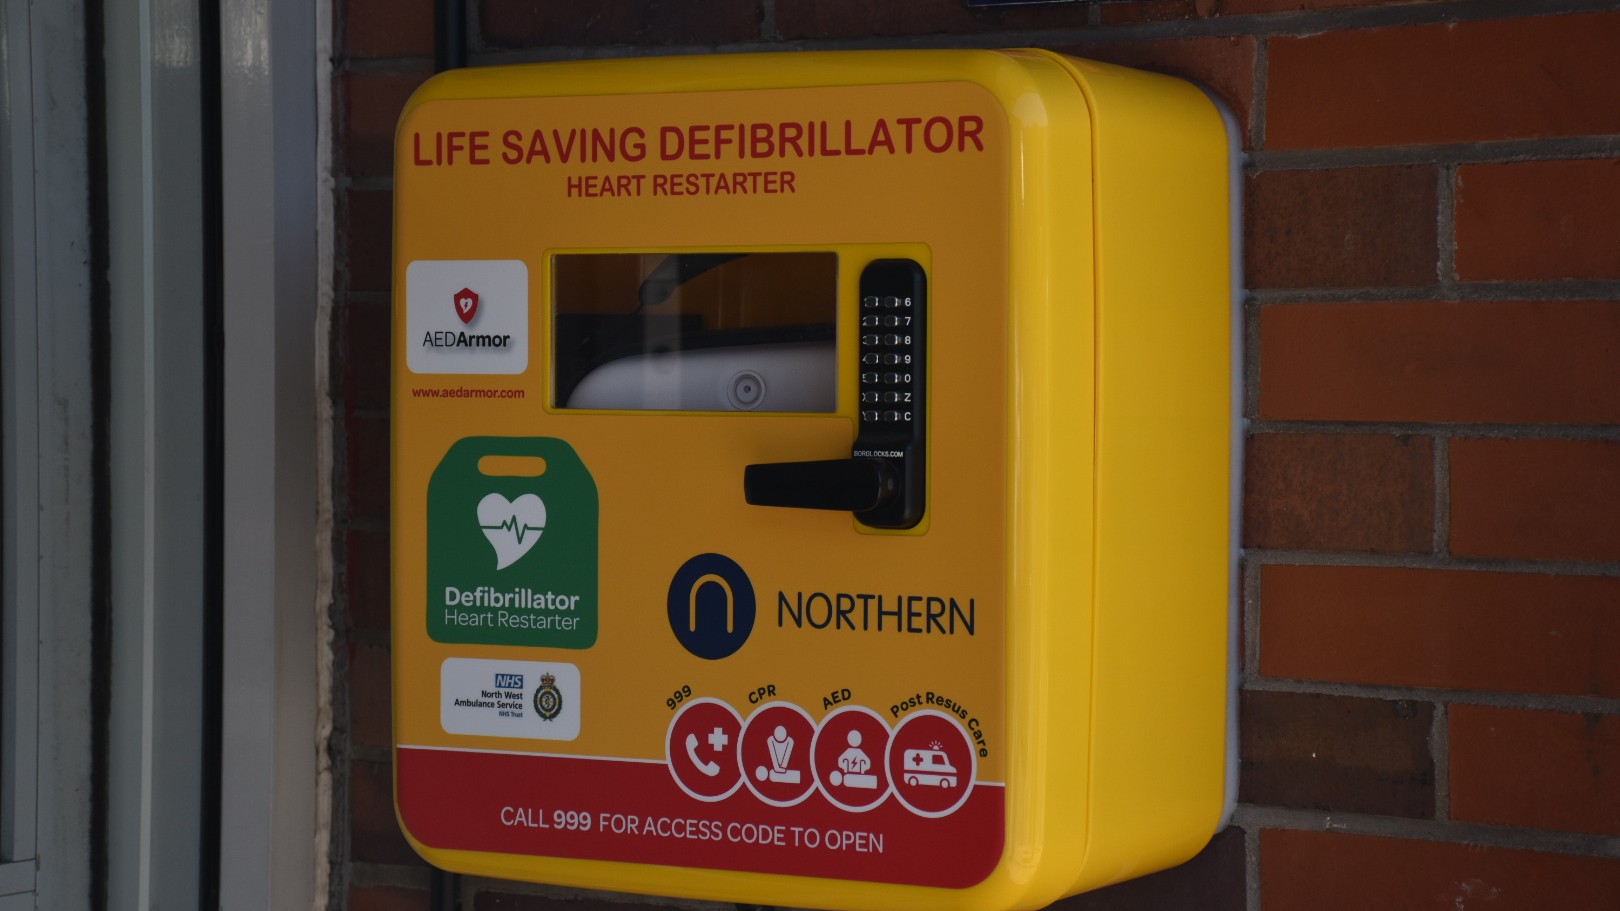 A Northern defibrillator